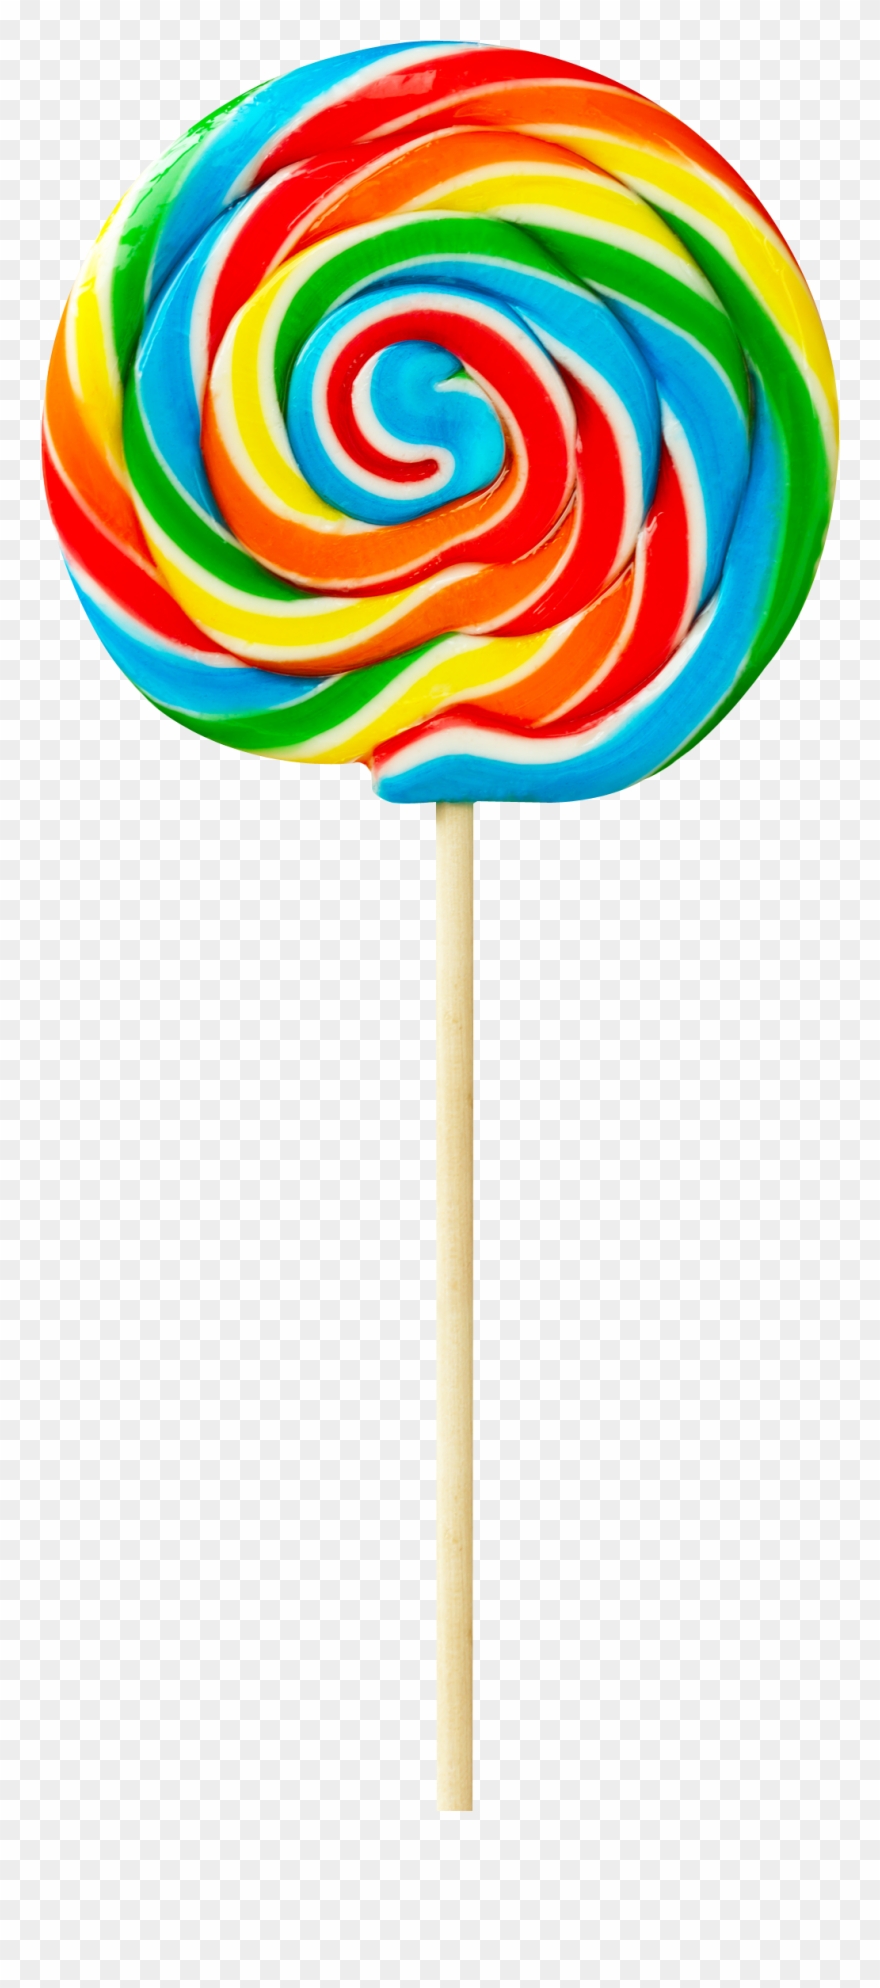 Rainbow clipart lollipop.